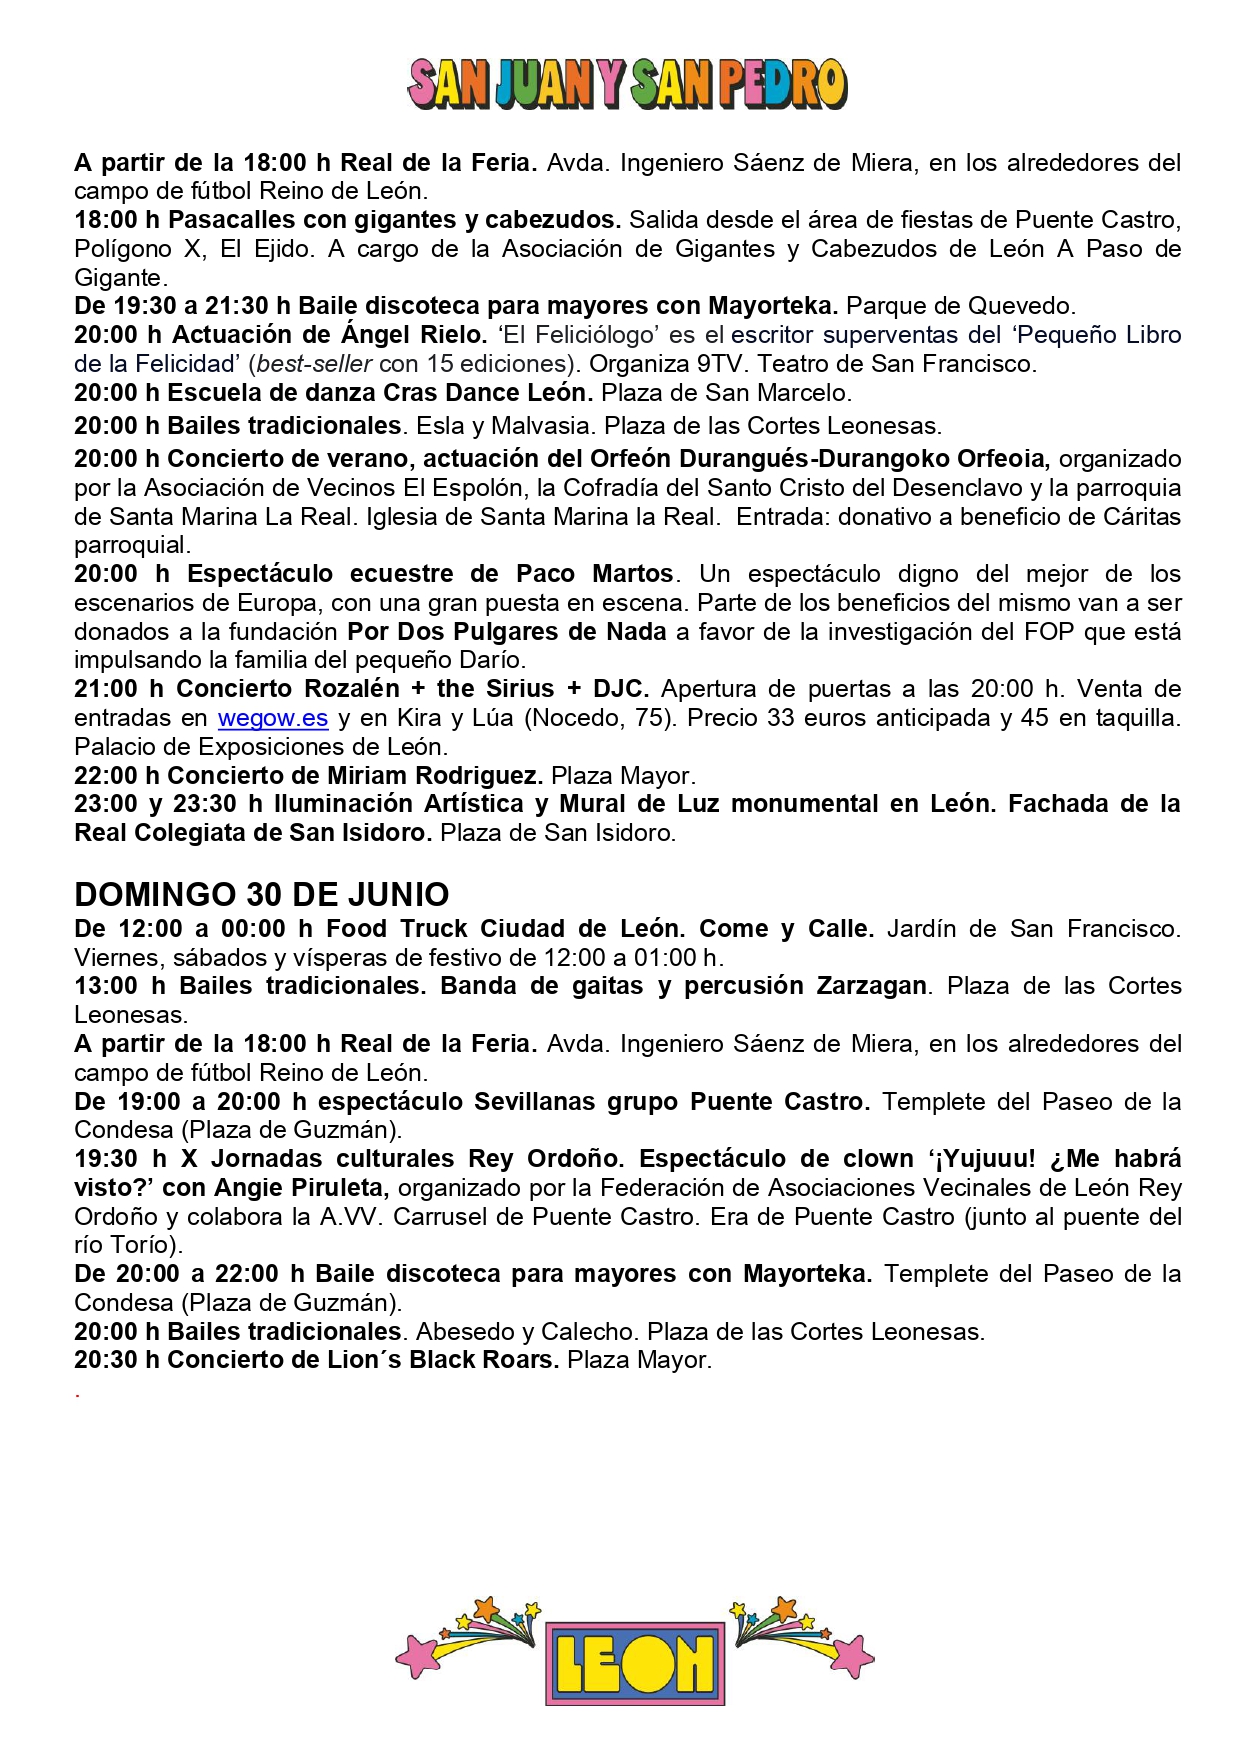 Programa de Fiestas San Juan y San Pedro en León, conciertos, deportes y todas las actividades 16